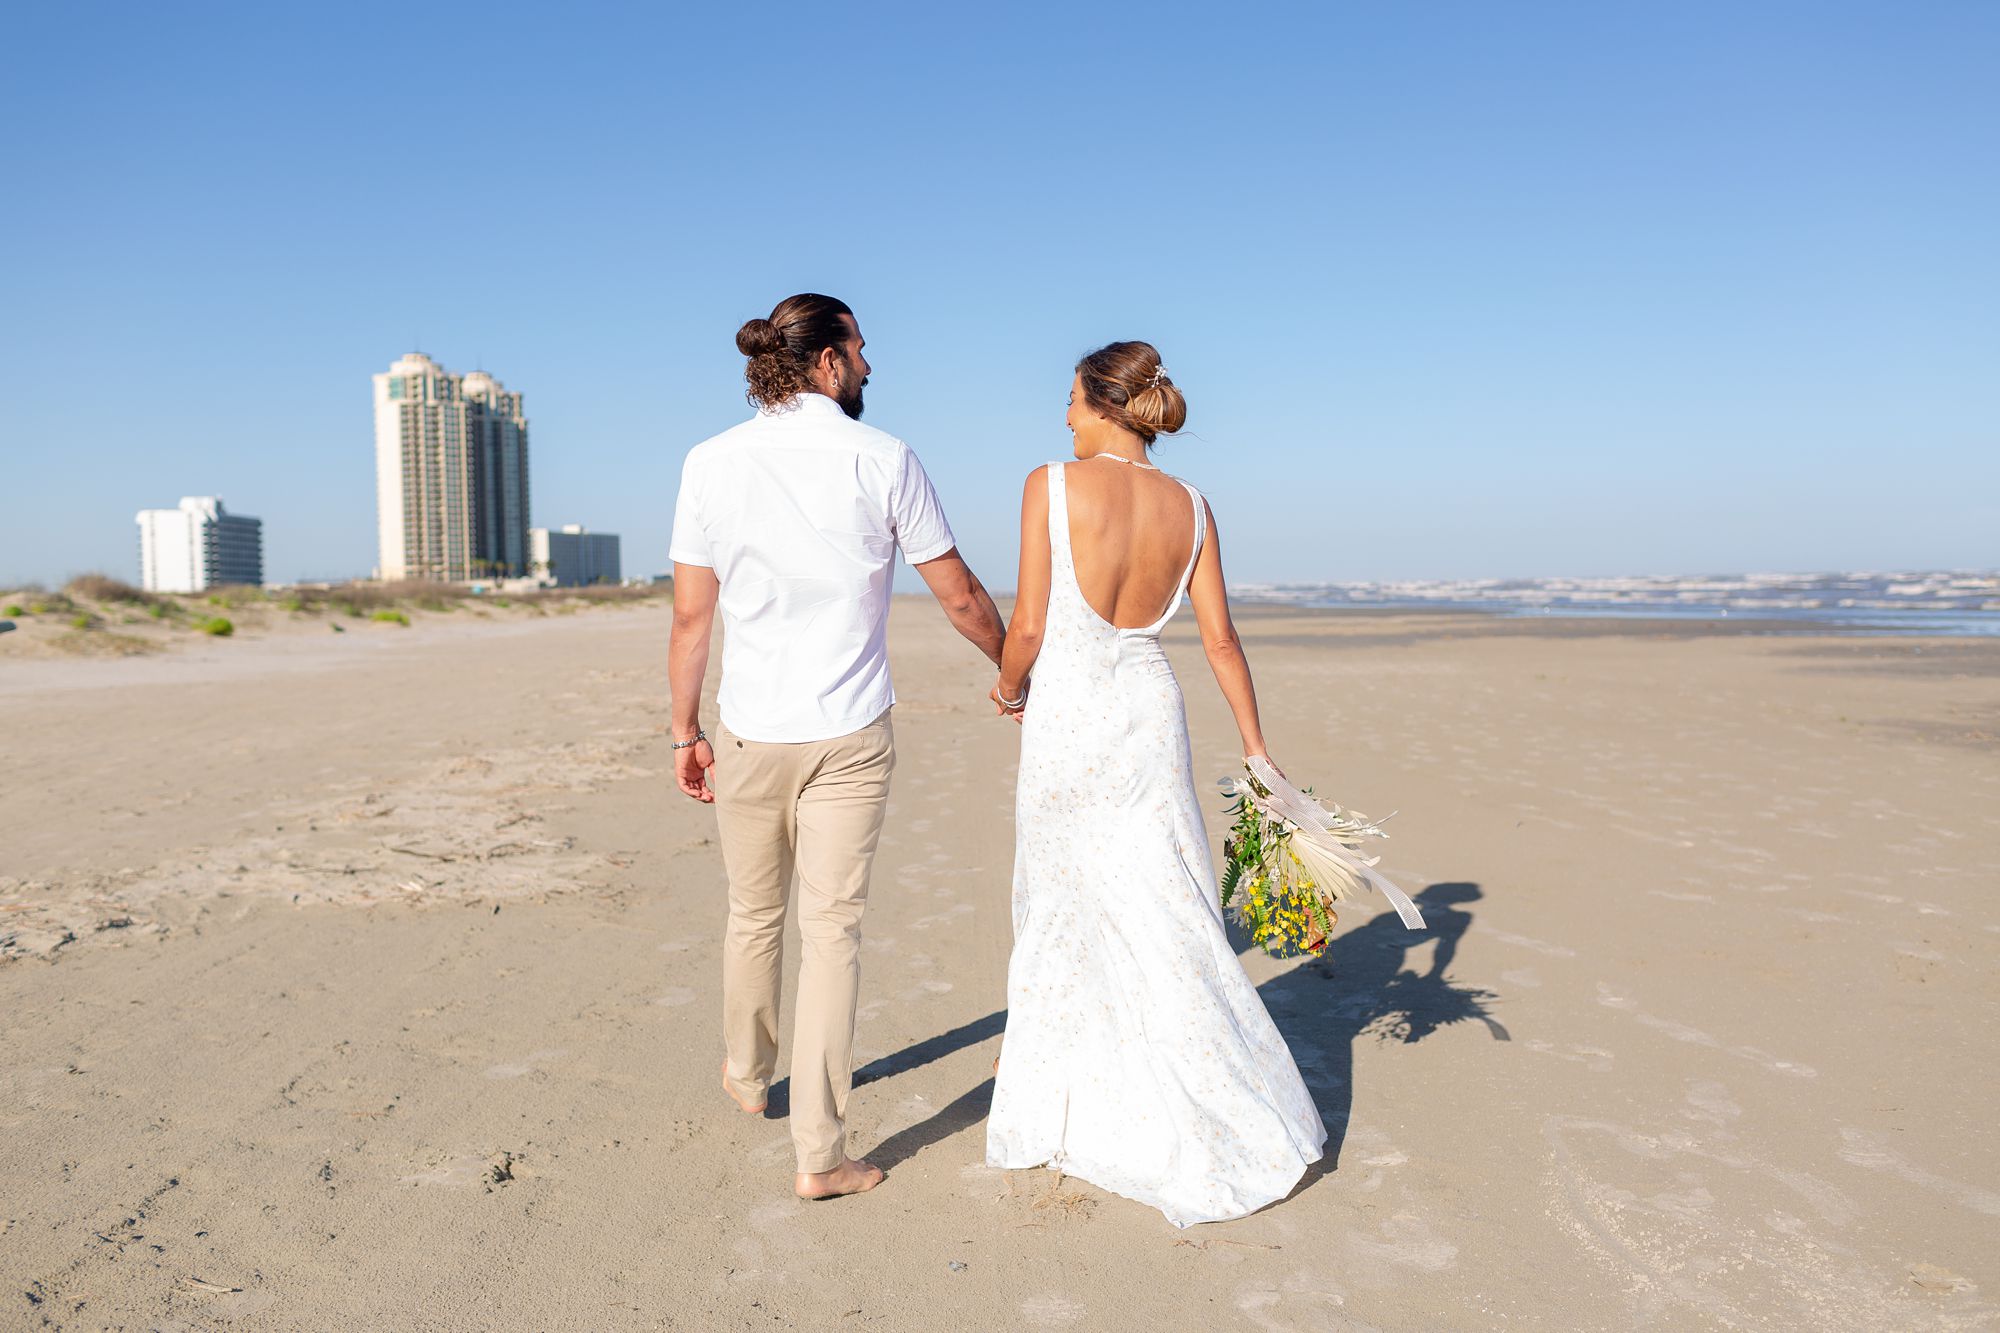 A bride and groom walk along a beach in Galveston, Texas.